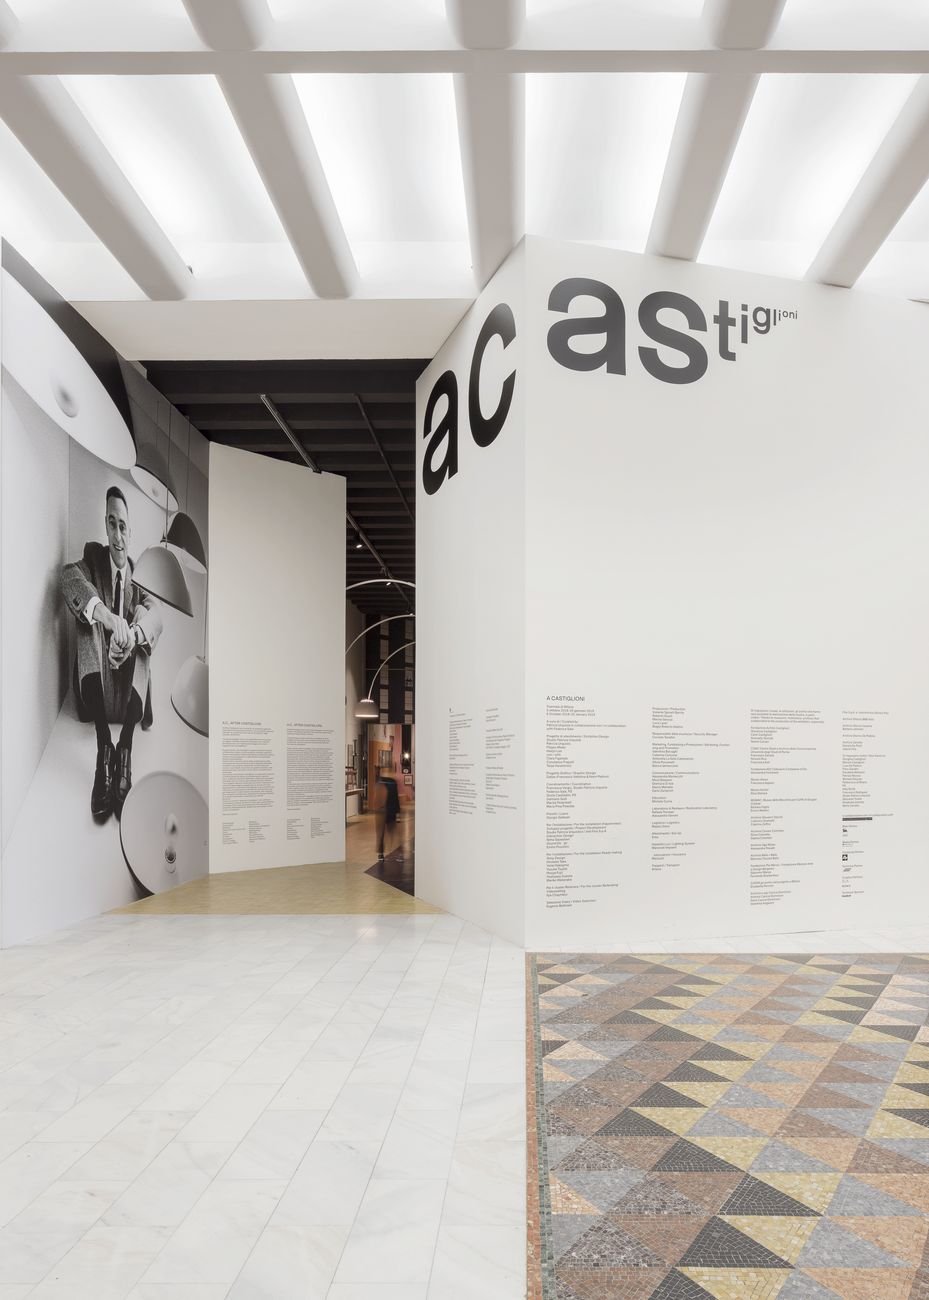 Studio Dallas, Graphics for the exhibition A Castiglioni, Triennale di Milano, 2018